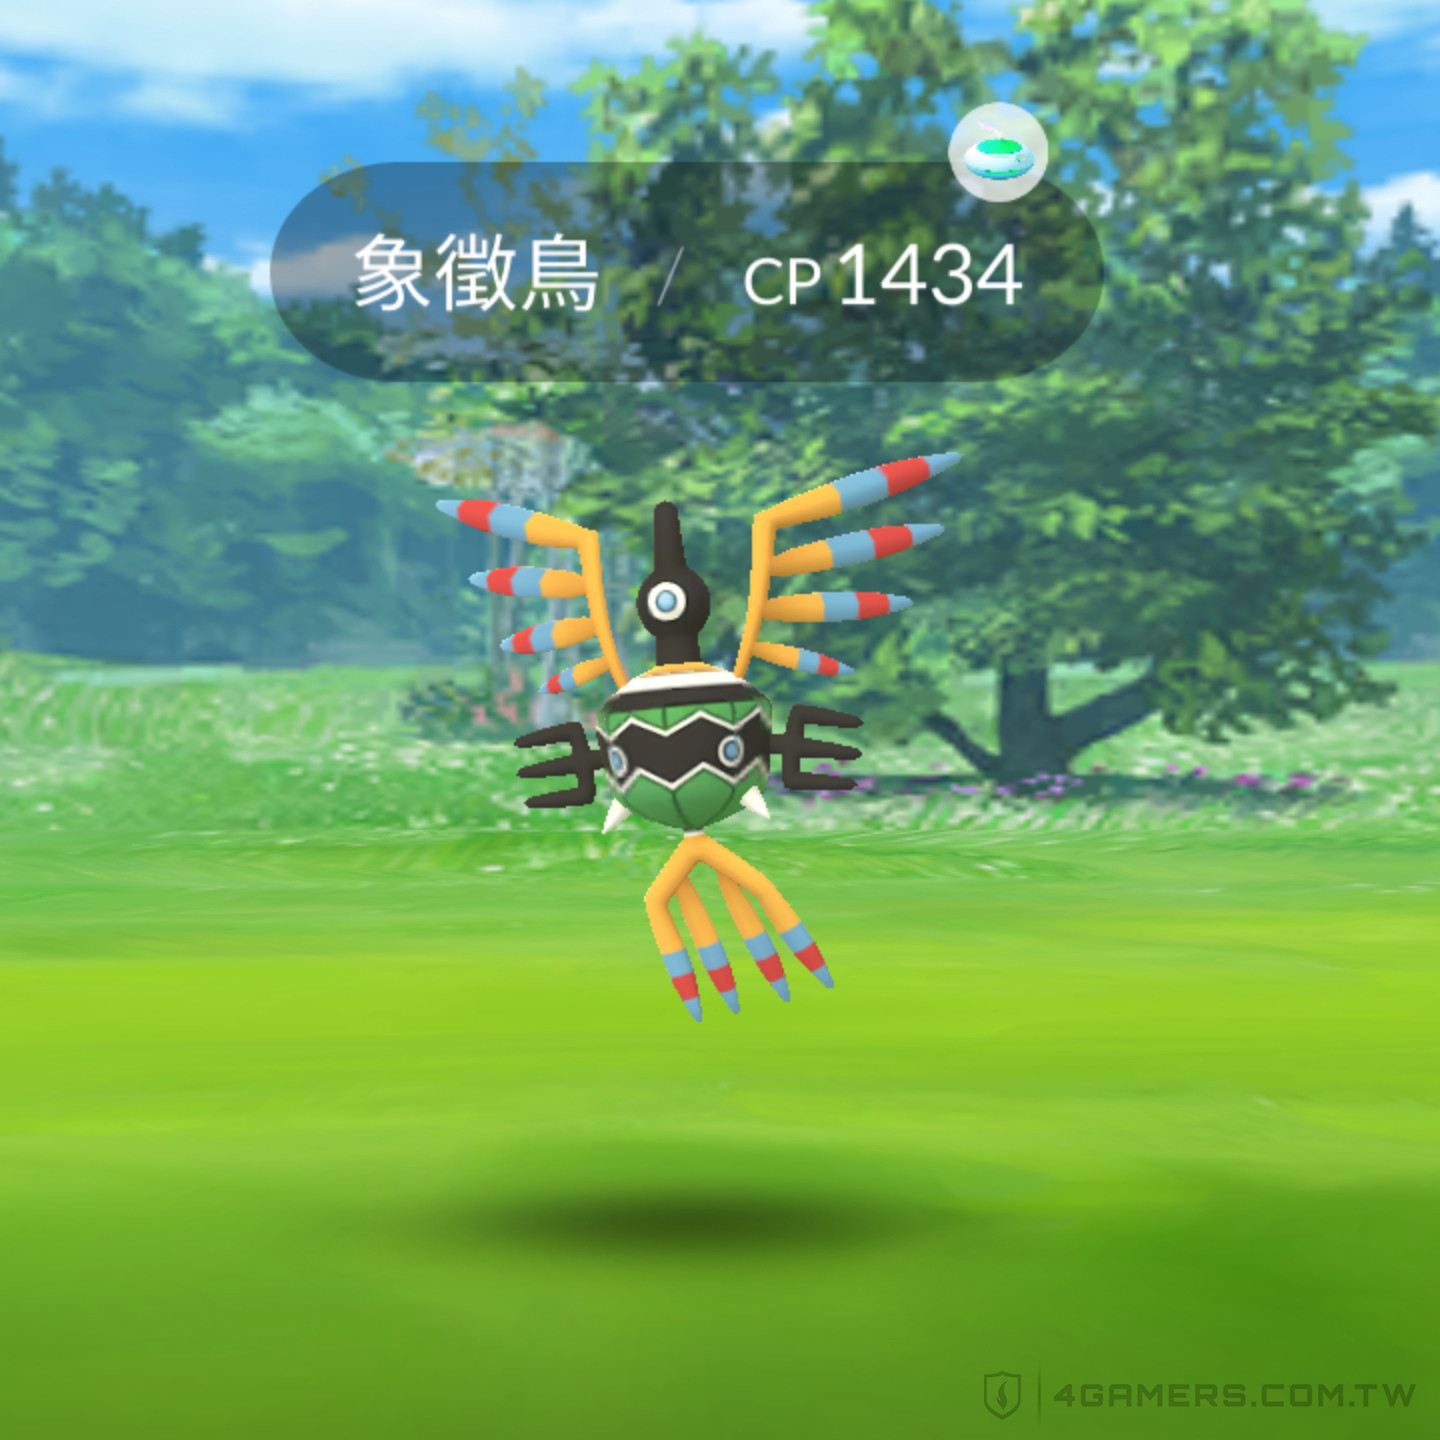 Pokemon GO Fest 2023 大阪